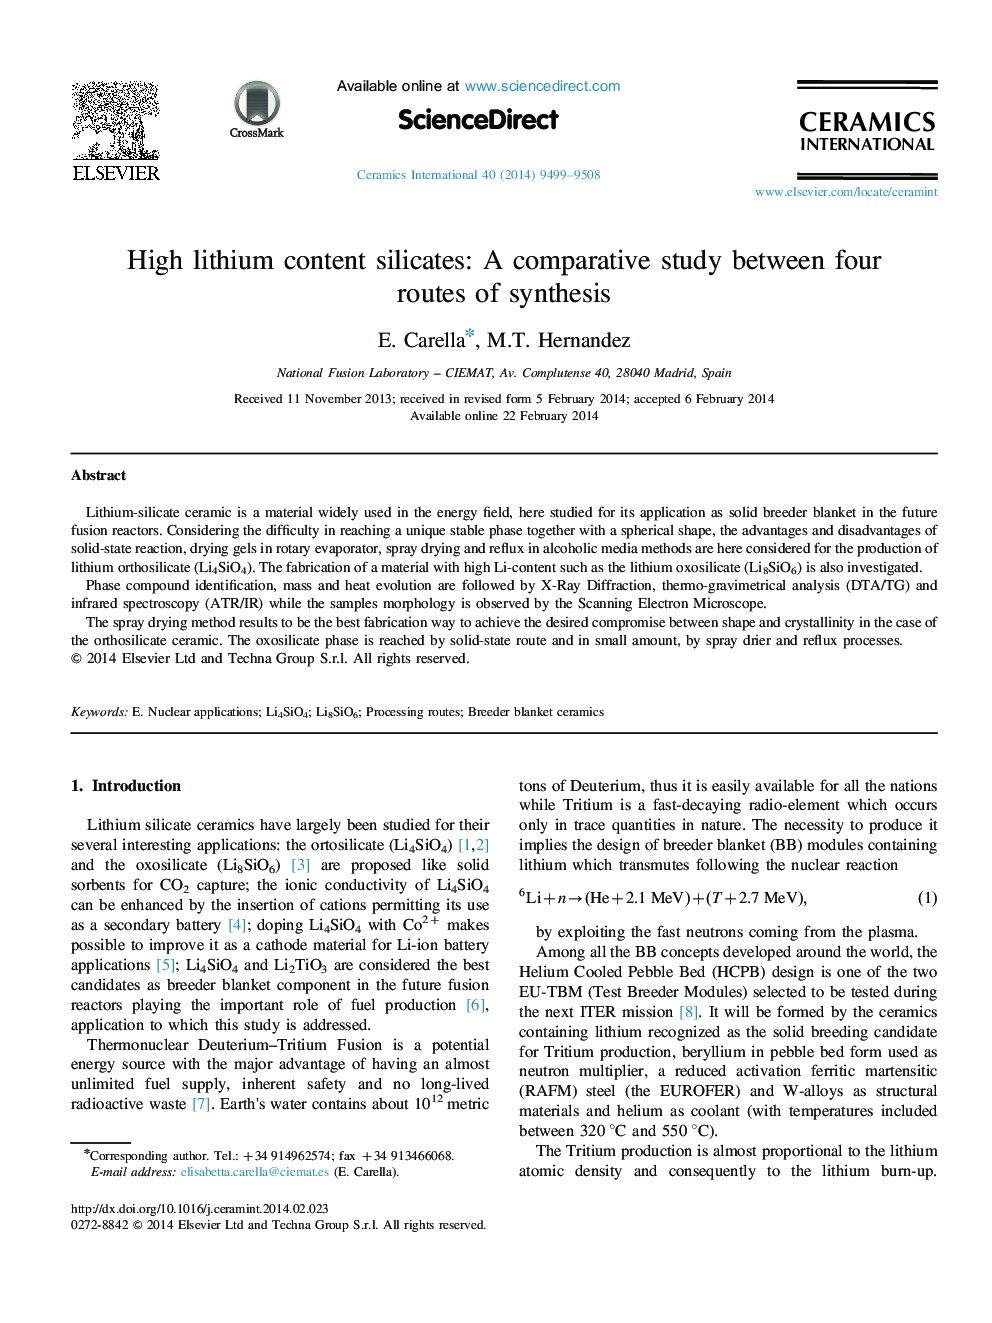 سیلیکات با محتوای لیتیوم بالا: یک مطالعه مقایسه ای بین چهار راه سنتز 